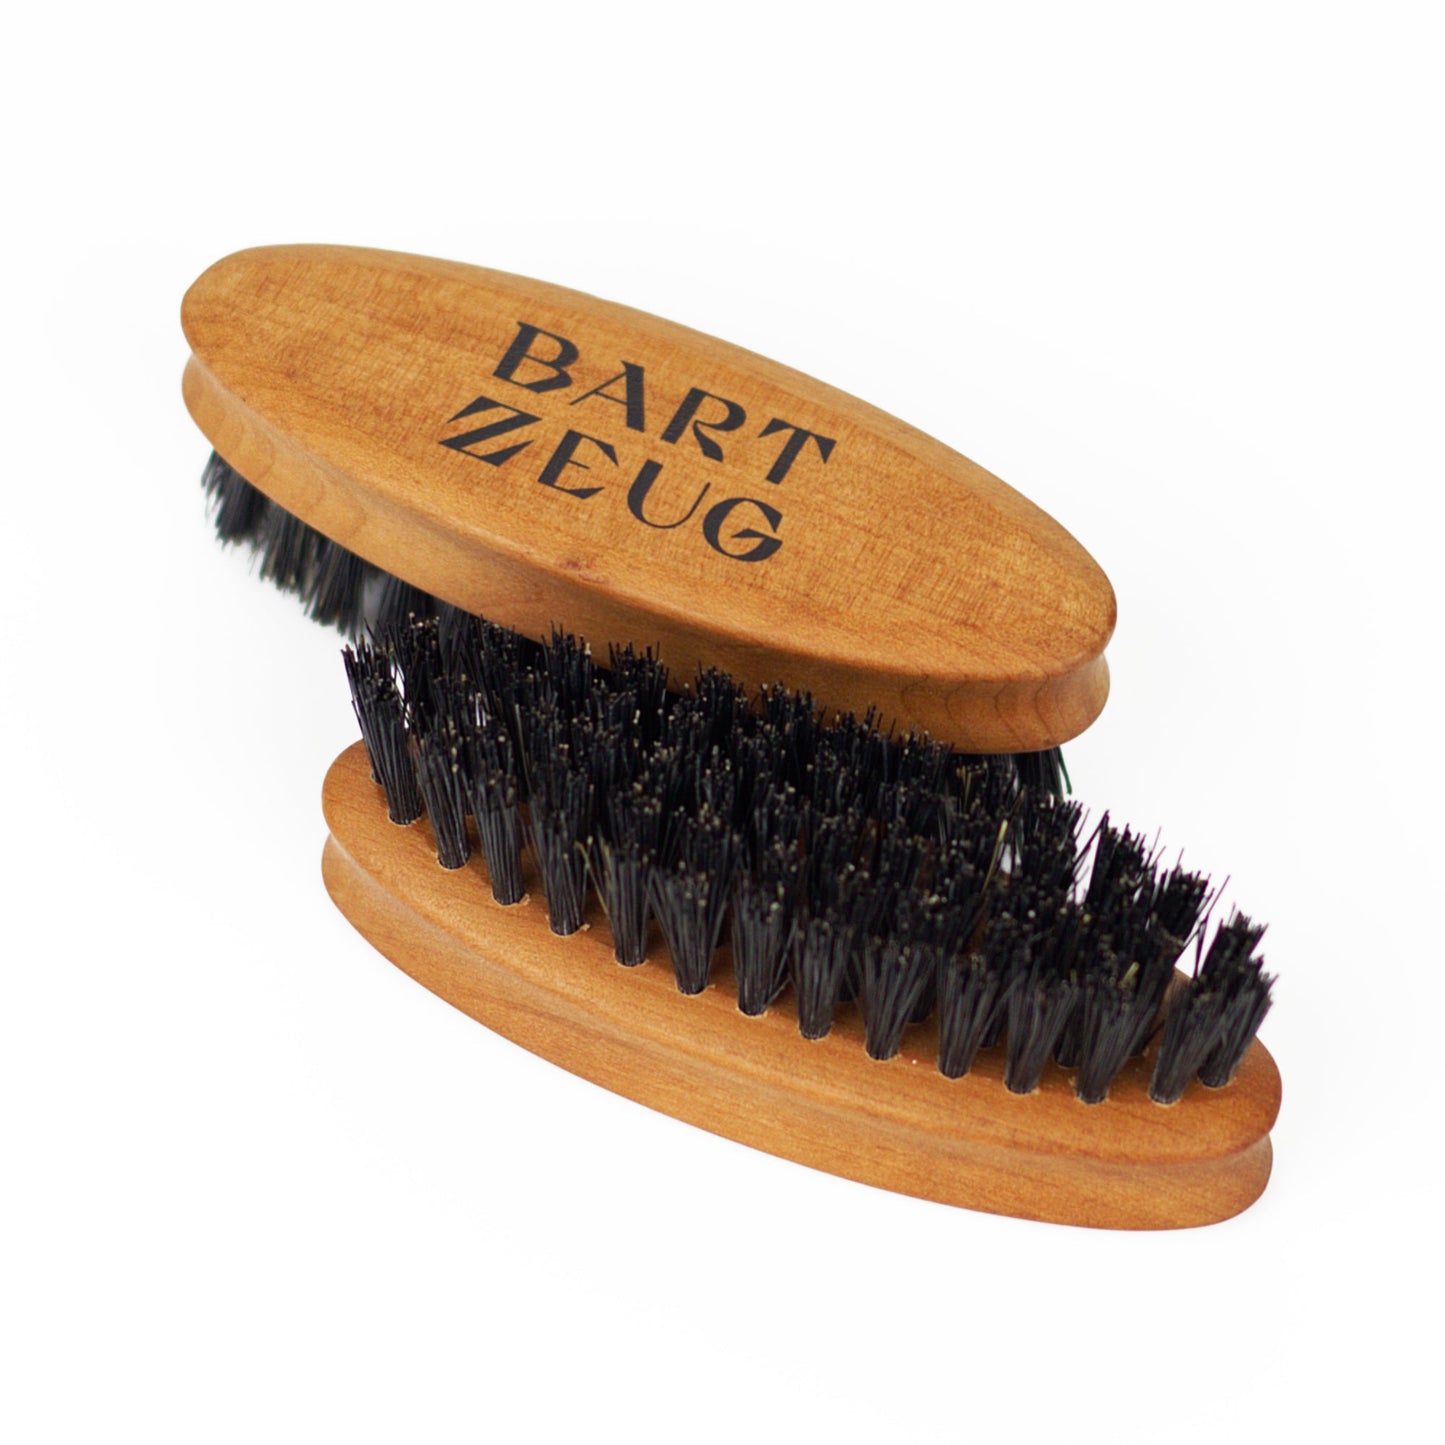 Bartzeug Bartbürste klein, Produktfoto: Bartbürste klein, normal und auf dem Kopf fotografiert